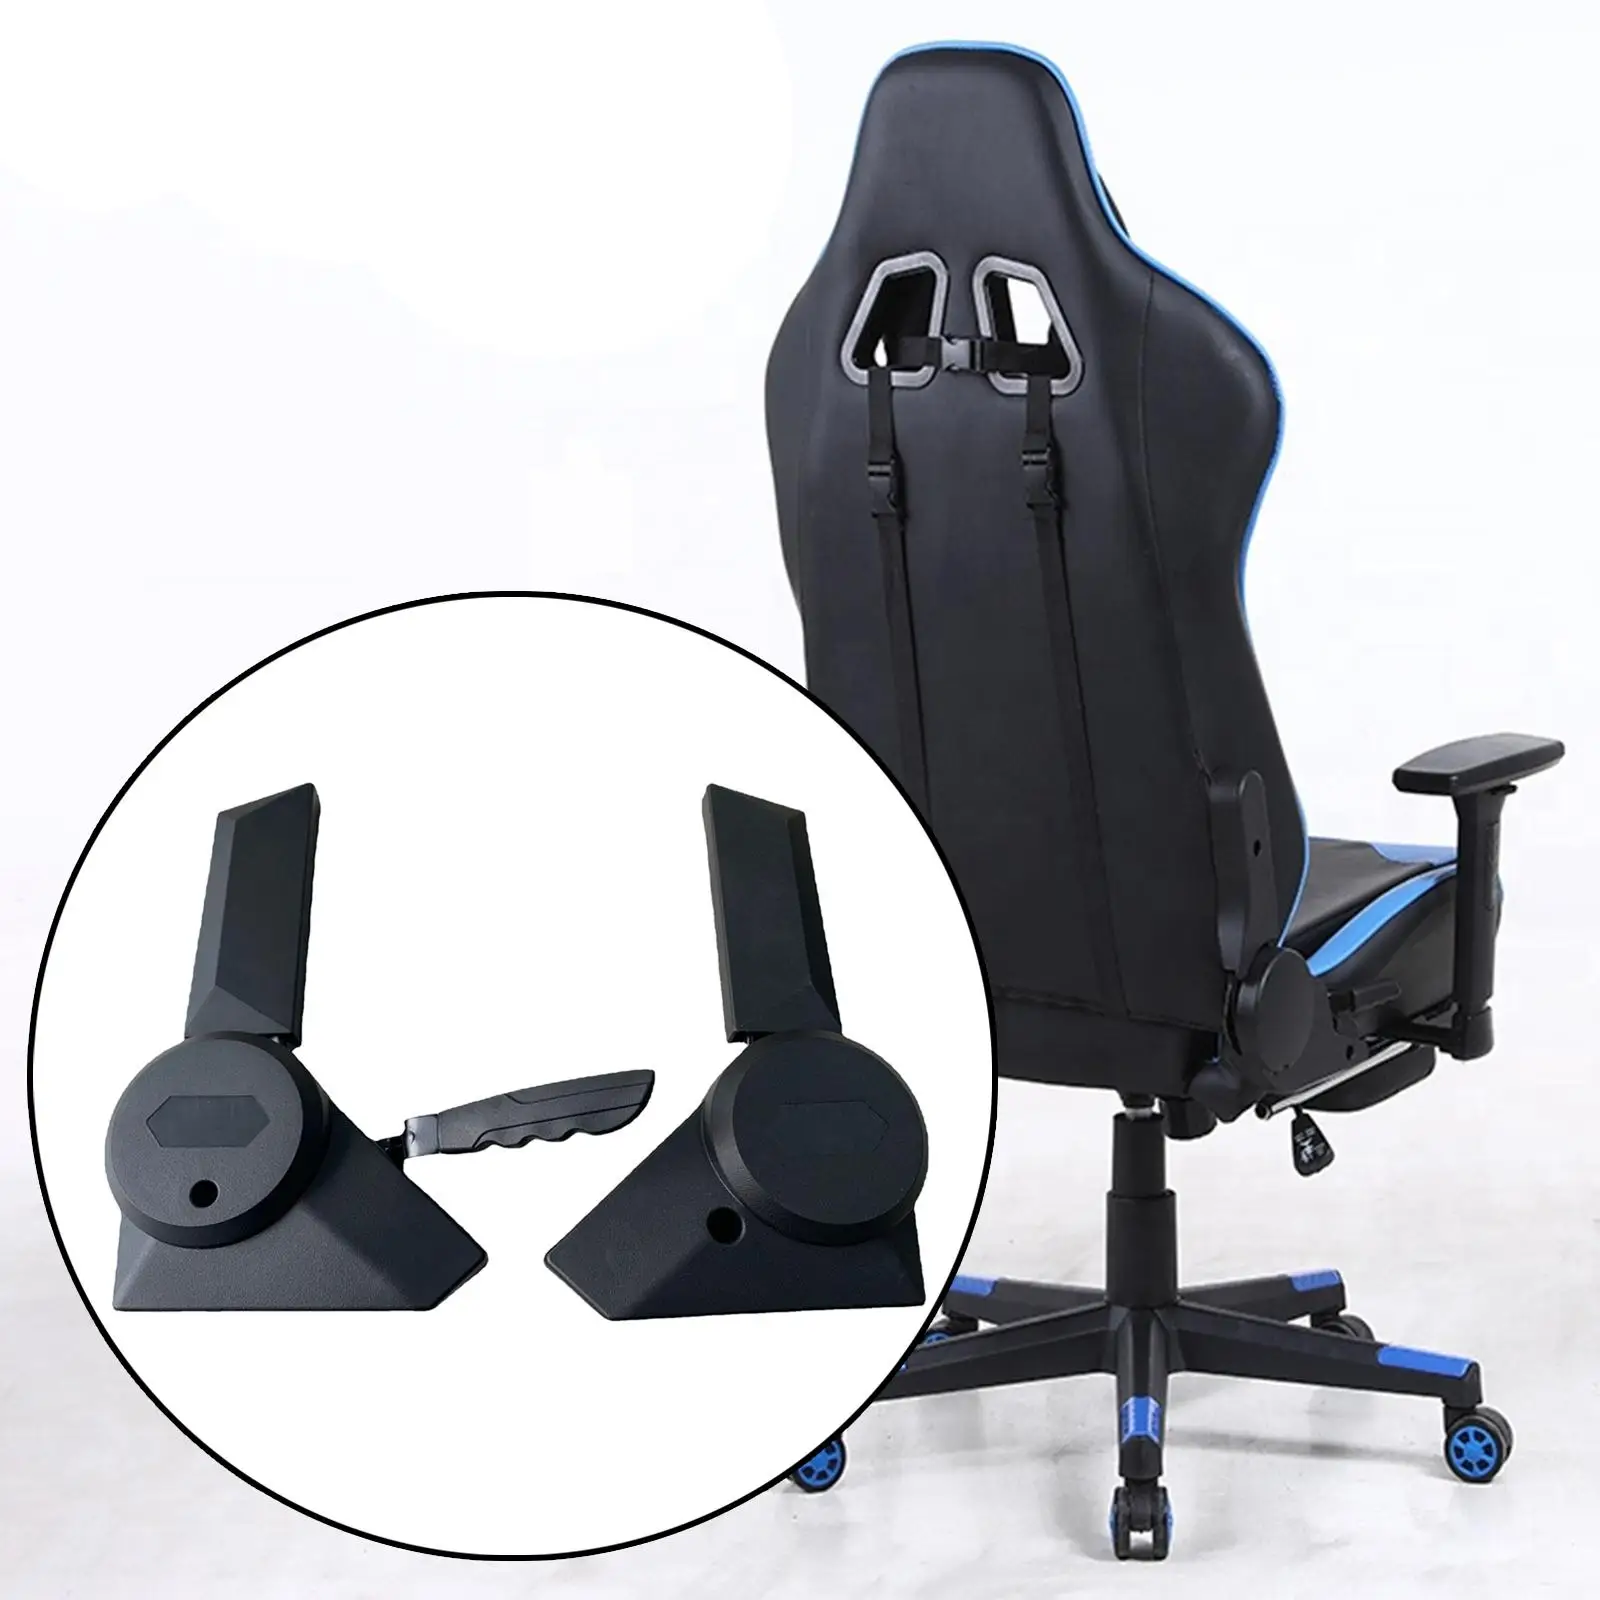 2 Stück Gaming Stuhl Winkel versteller Ersatz hohe Rückenlehne drehbar  Computer Schreibtisch Stuhl Winkel versteller für Gaming Sitz Ersatzteile